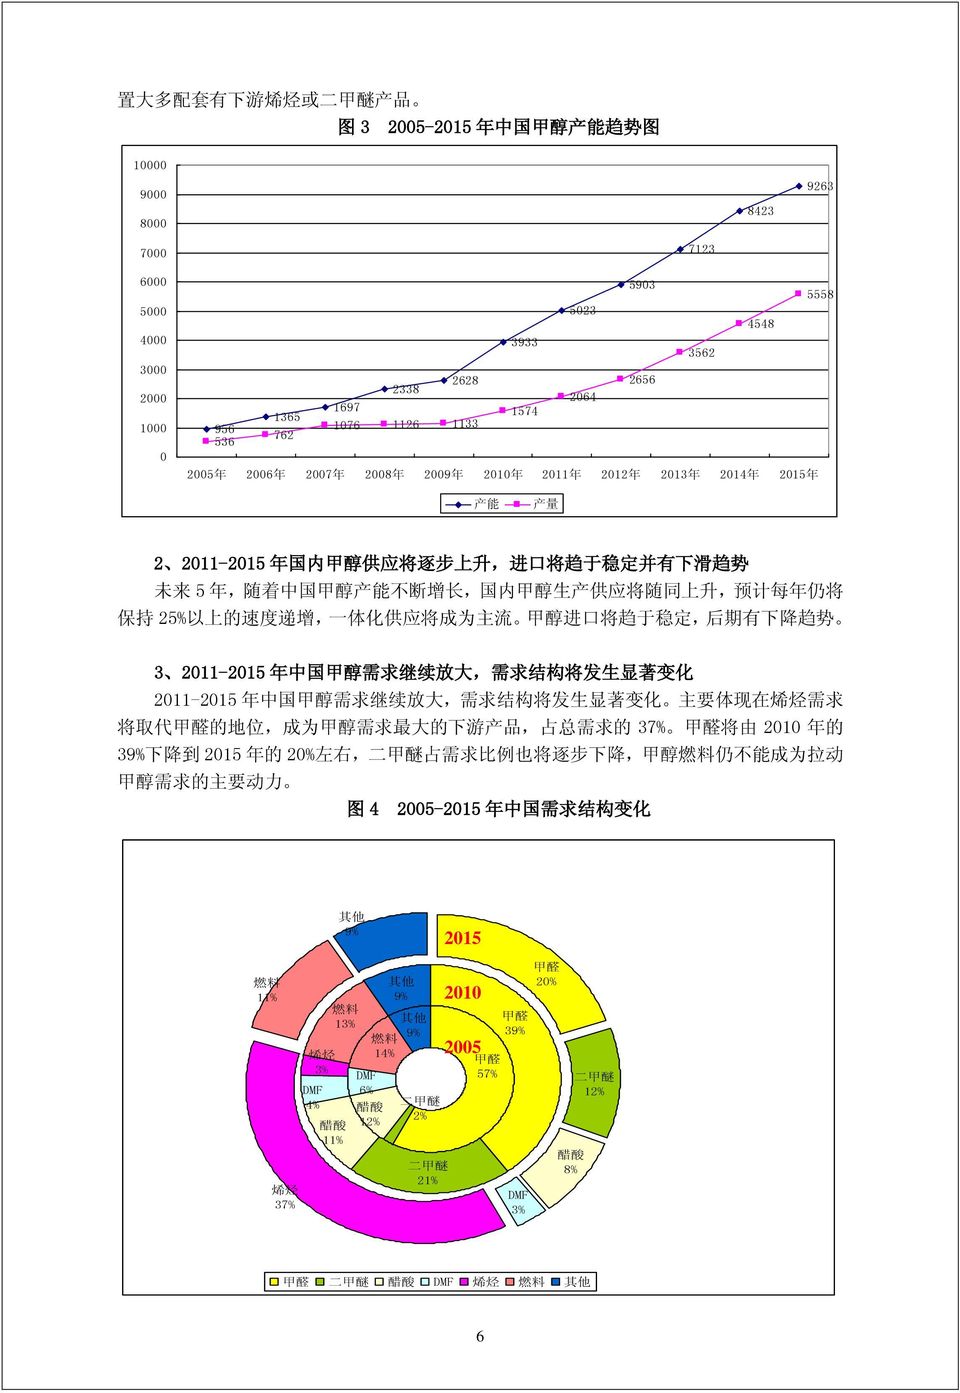 不 断 增 长, 国 内 甲 醇 生 产 供 应 将 随 同 上 升, 预 计 每 年 仍 将 保 持 25% 以 上 的 速 度 递 增, 一 体 化 供 应 将 成 为 主 流 甲 醇 进 口 将 趋 于 稳 定, 后 期 有 下 降 趋 势 3 2011-2015 年 中 国 甲 醇 需 求 继 续 放 大, 需 求 结 构 将 发 生 显 著 变 化 2011-2015 年 中 国 甲